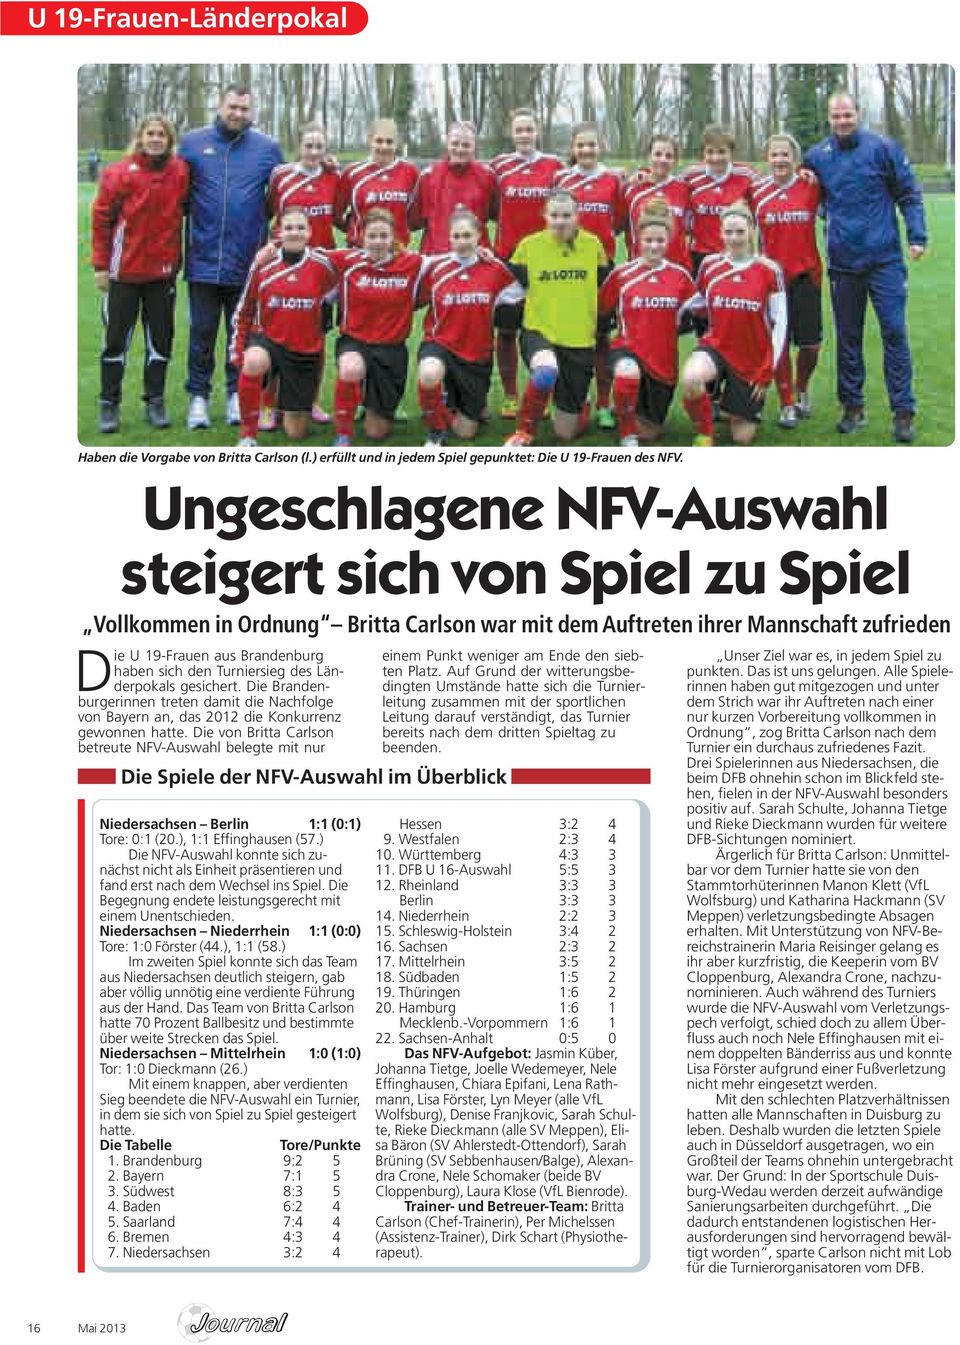 Turniersieg des Länderpokals gesichert. Die Brandenburgerinnen treten damit die Nachfolge von Bayern an, das 2012 die Konkurrenz gewonnen hatte.